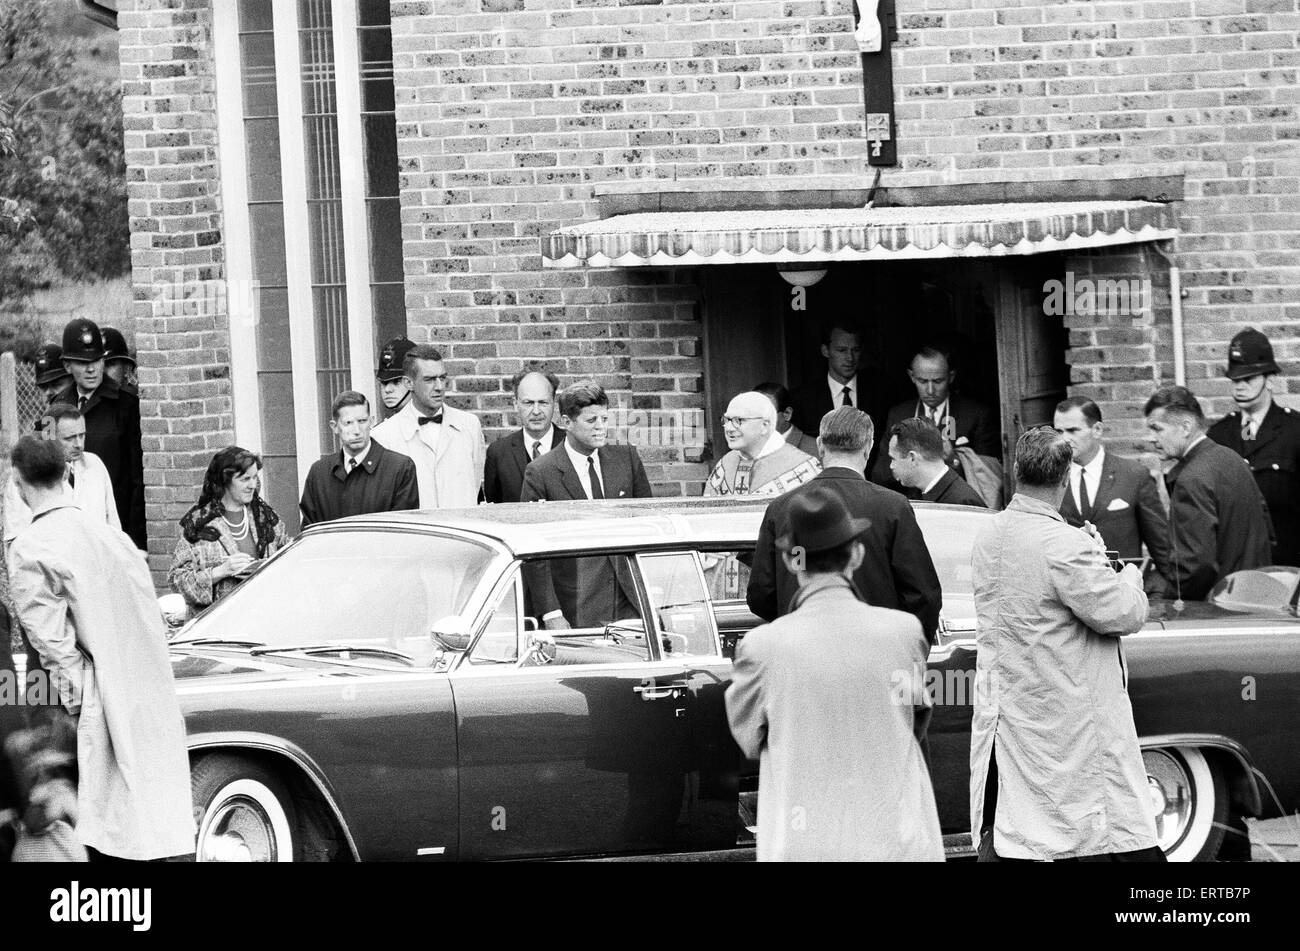 La visita del Presidente americano John F Kennedy per l'Inghilterra. Presso la chiesa della Madonna della foresta" a Forest Row, Sussex. Il 29 giugno 1963. Foto Stock